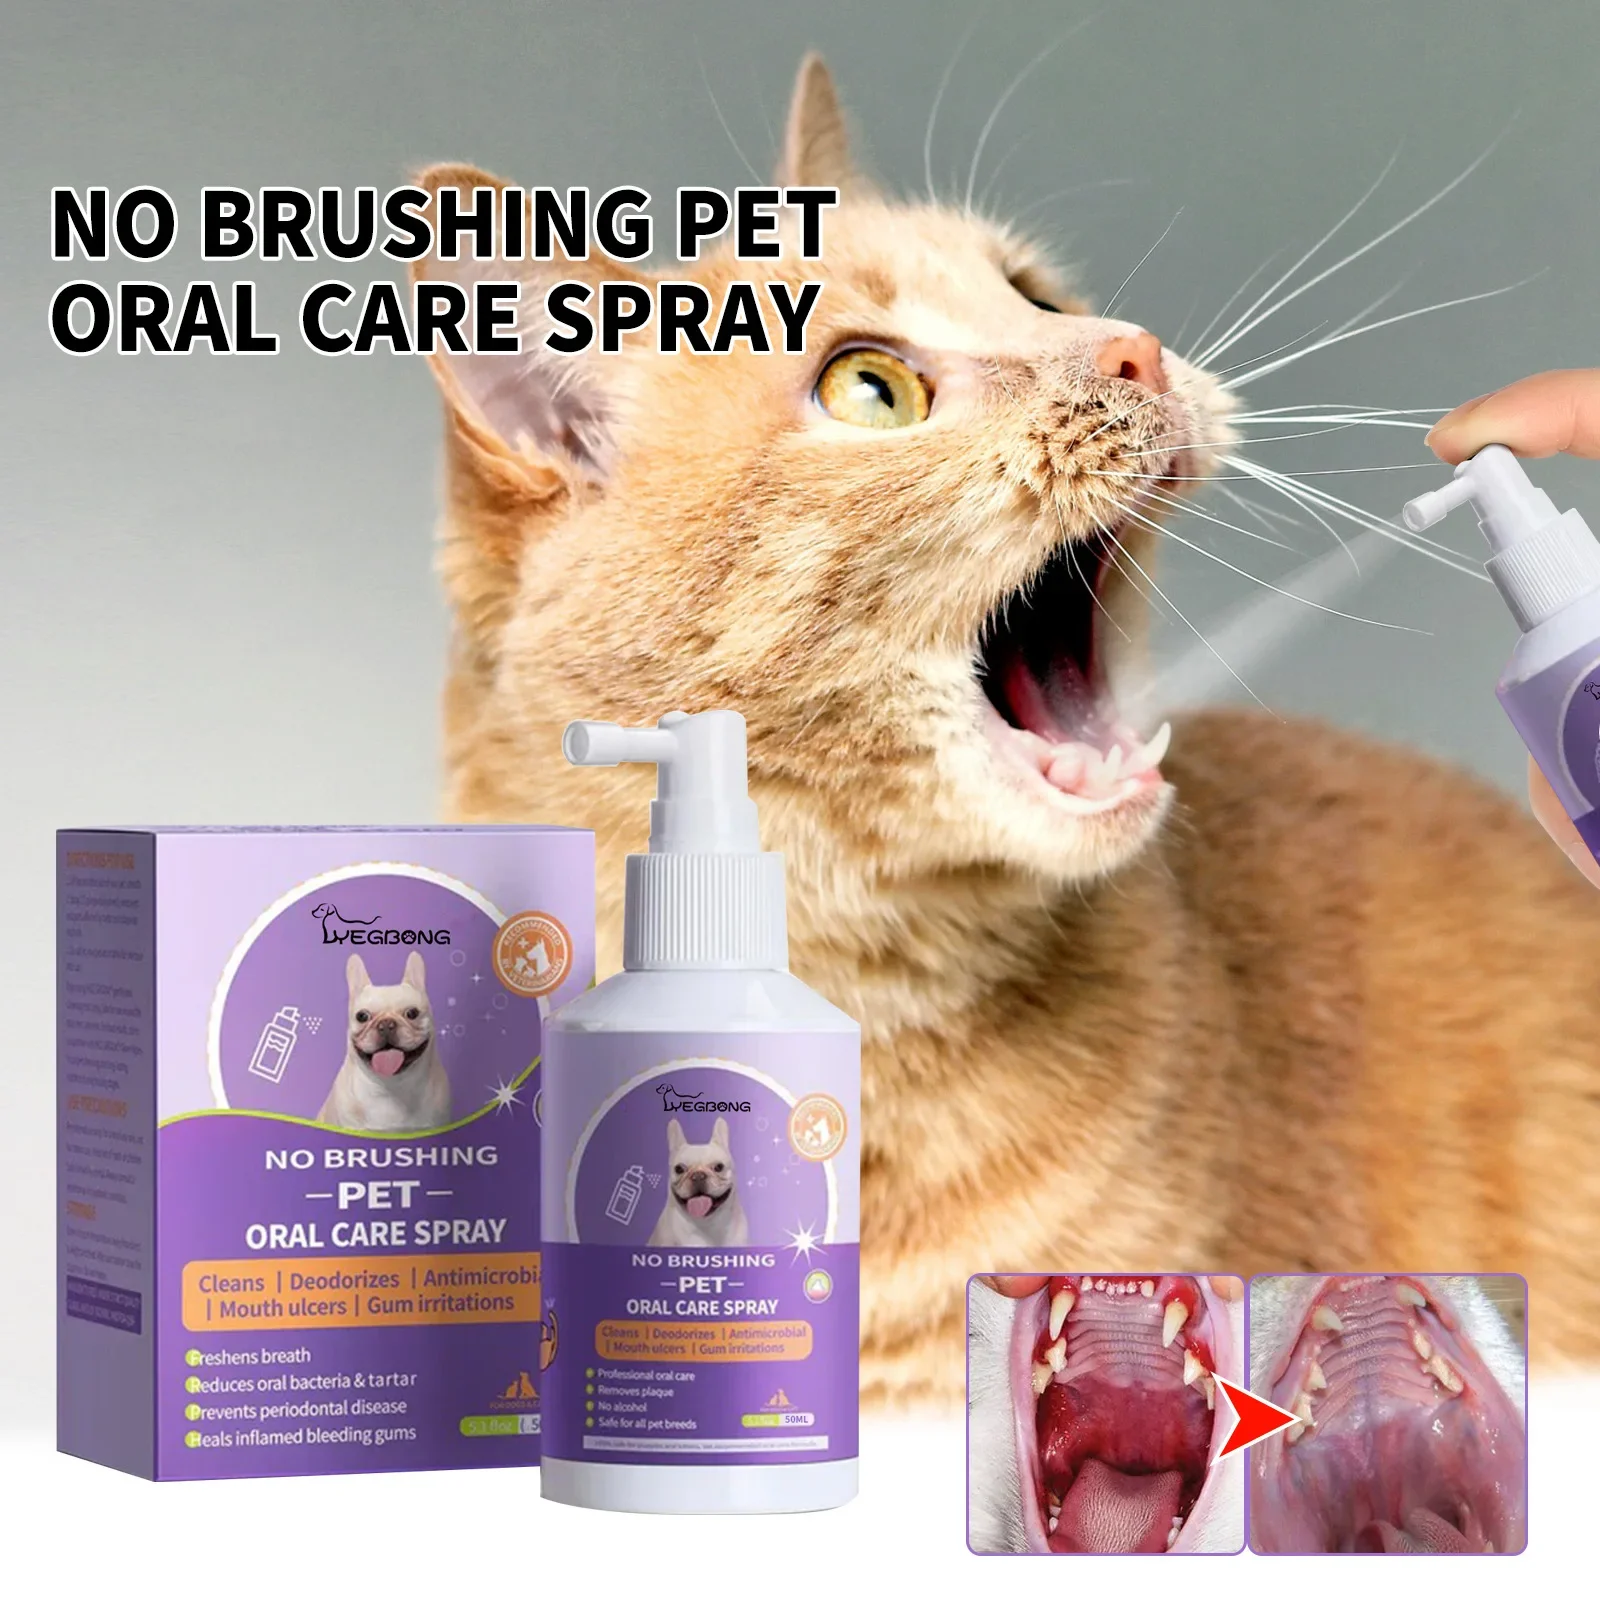 

Спрей для чистки зубов собак, кошек, домашних питомцев, спрей для очистки полости рта, свежий дезодорант для чистки зубов, предотвращает вычисление питомцев, спрей для свежего дыхания